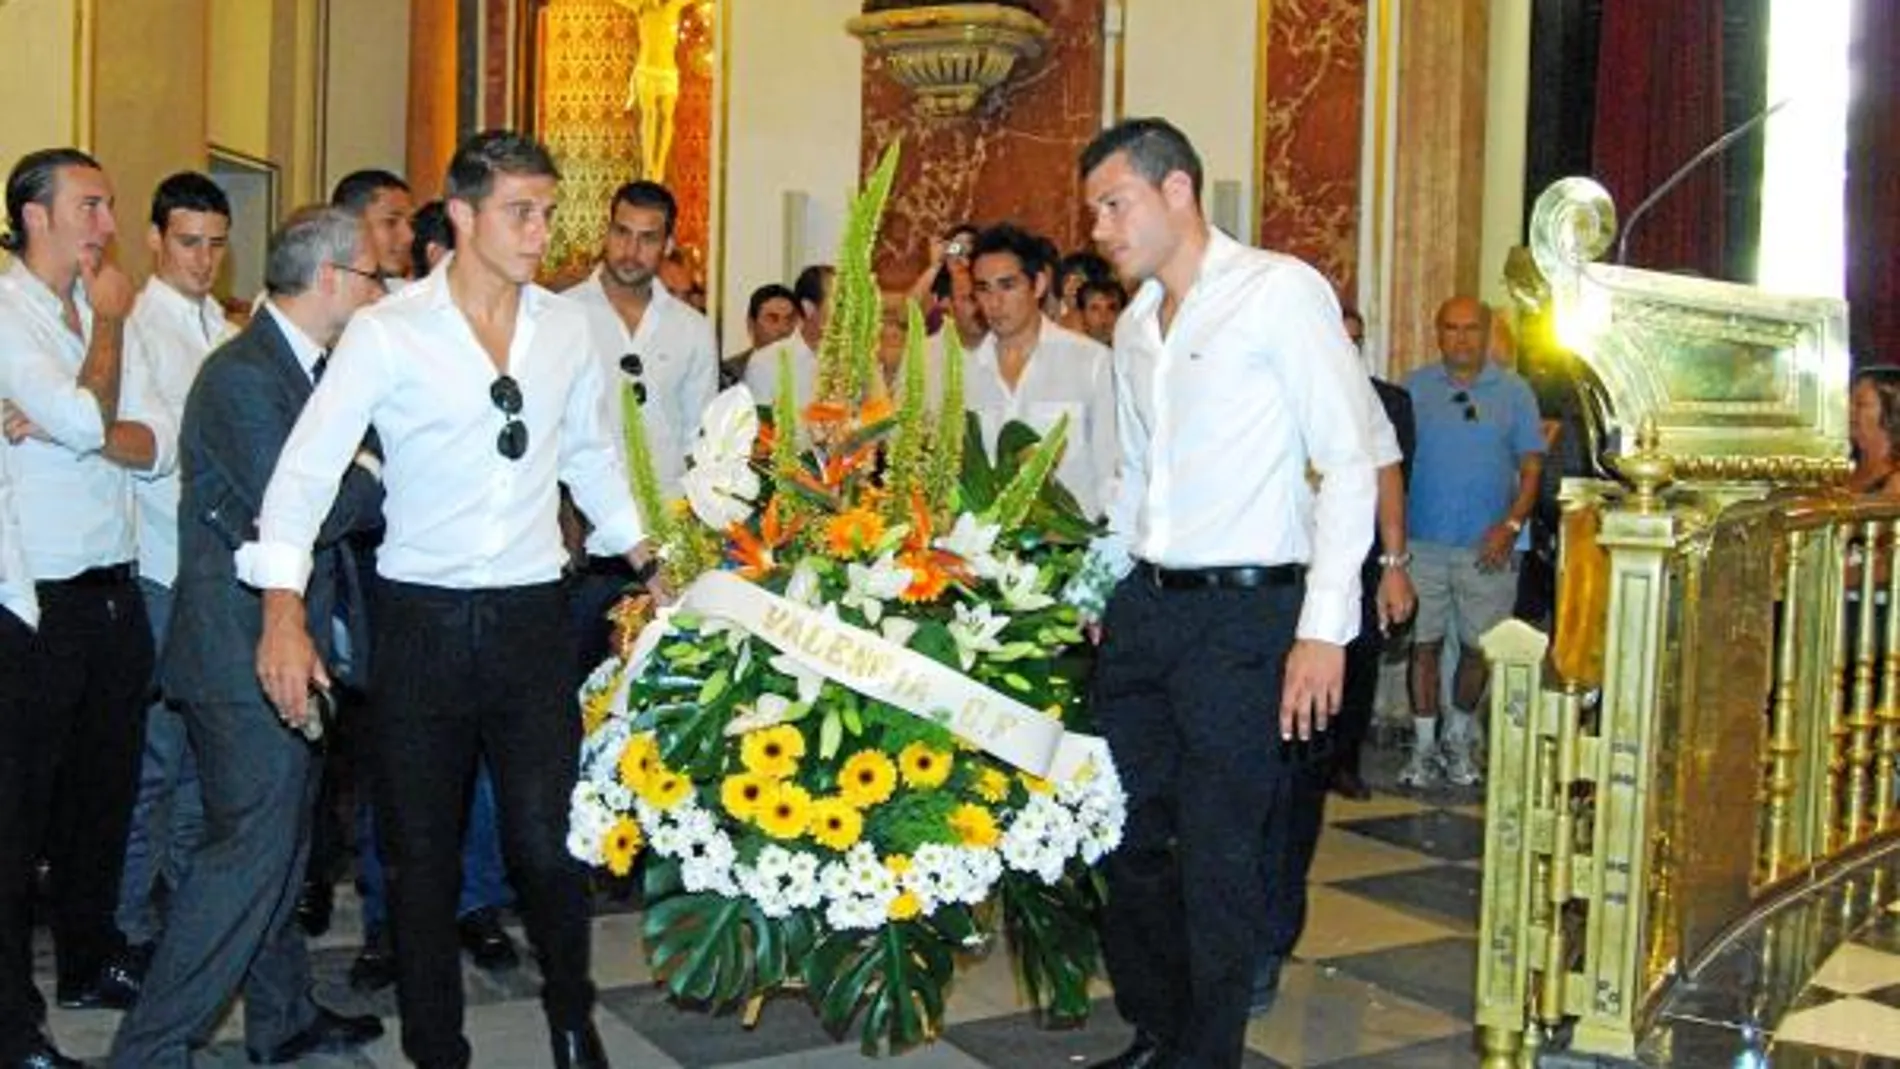 Los futbolistas del Valencia C.F. visitaron ayer la Basílica para realizar la ofrenda floral a la Virgen